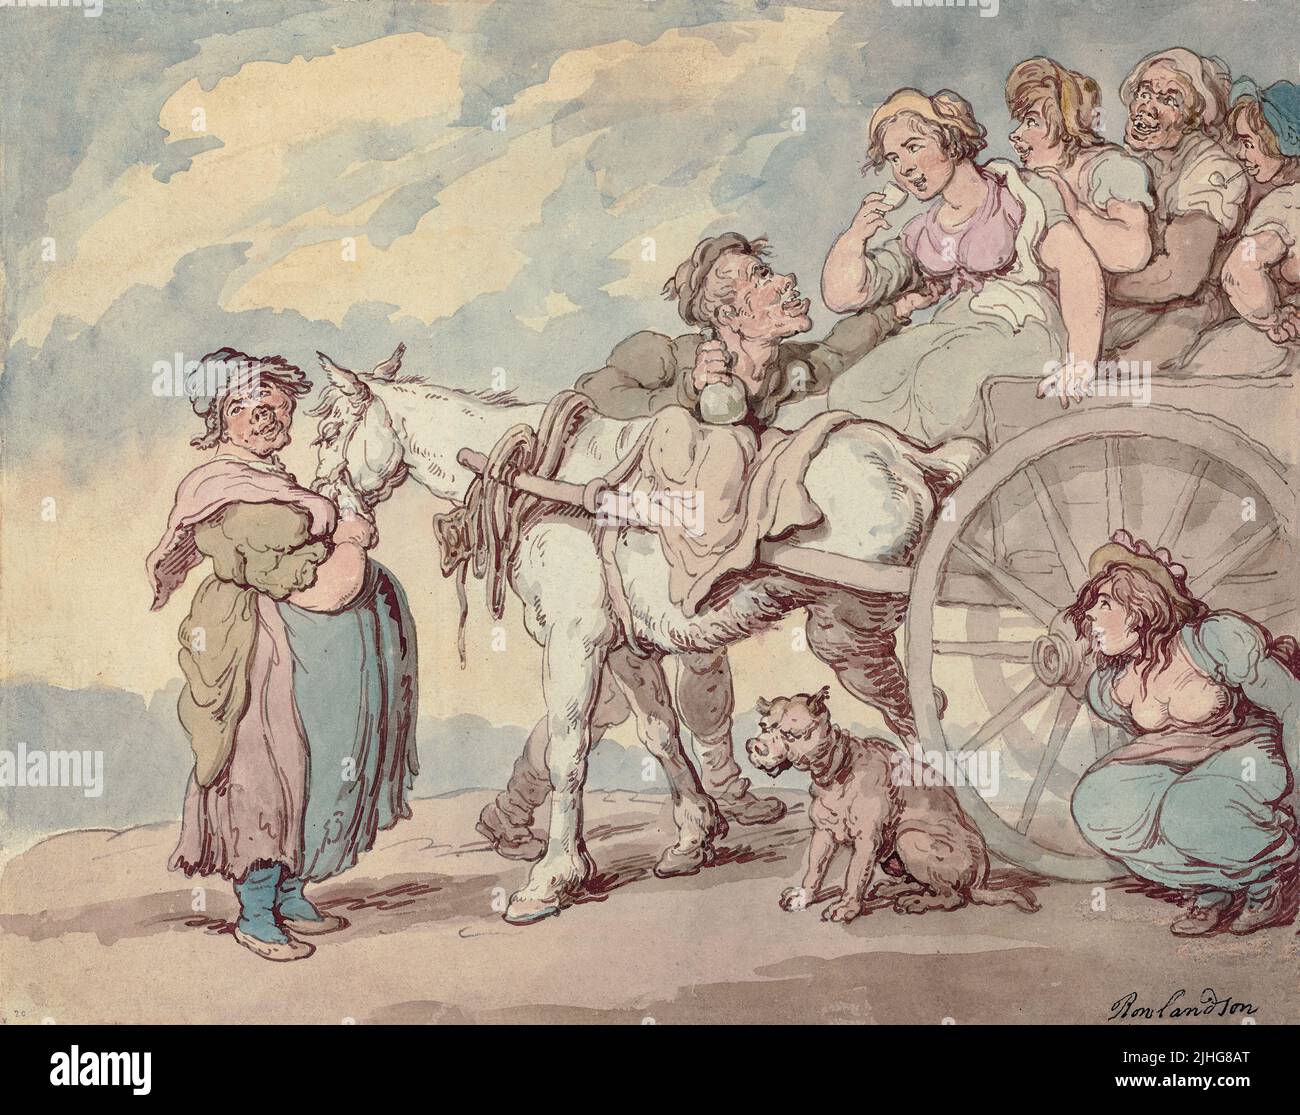 Un pique-nique irlandais par Thomas Rowlandson (1757-1827), artiste et caricaturiste anglais de l'ère géorgienne, noté pour sa satire politique et son observation sociale. Artiste prolifique et graveur, comme d'autres caricaturistes de son âge, ses caricatures sont souvent robustes ou débriqueuses. Banque D'Images